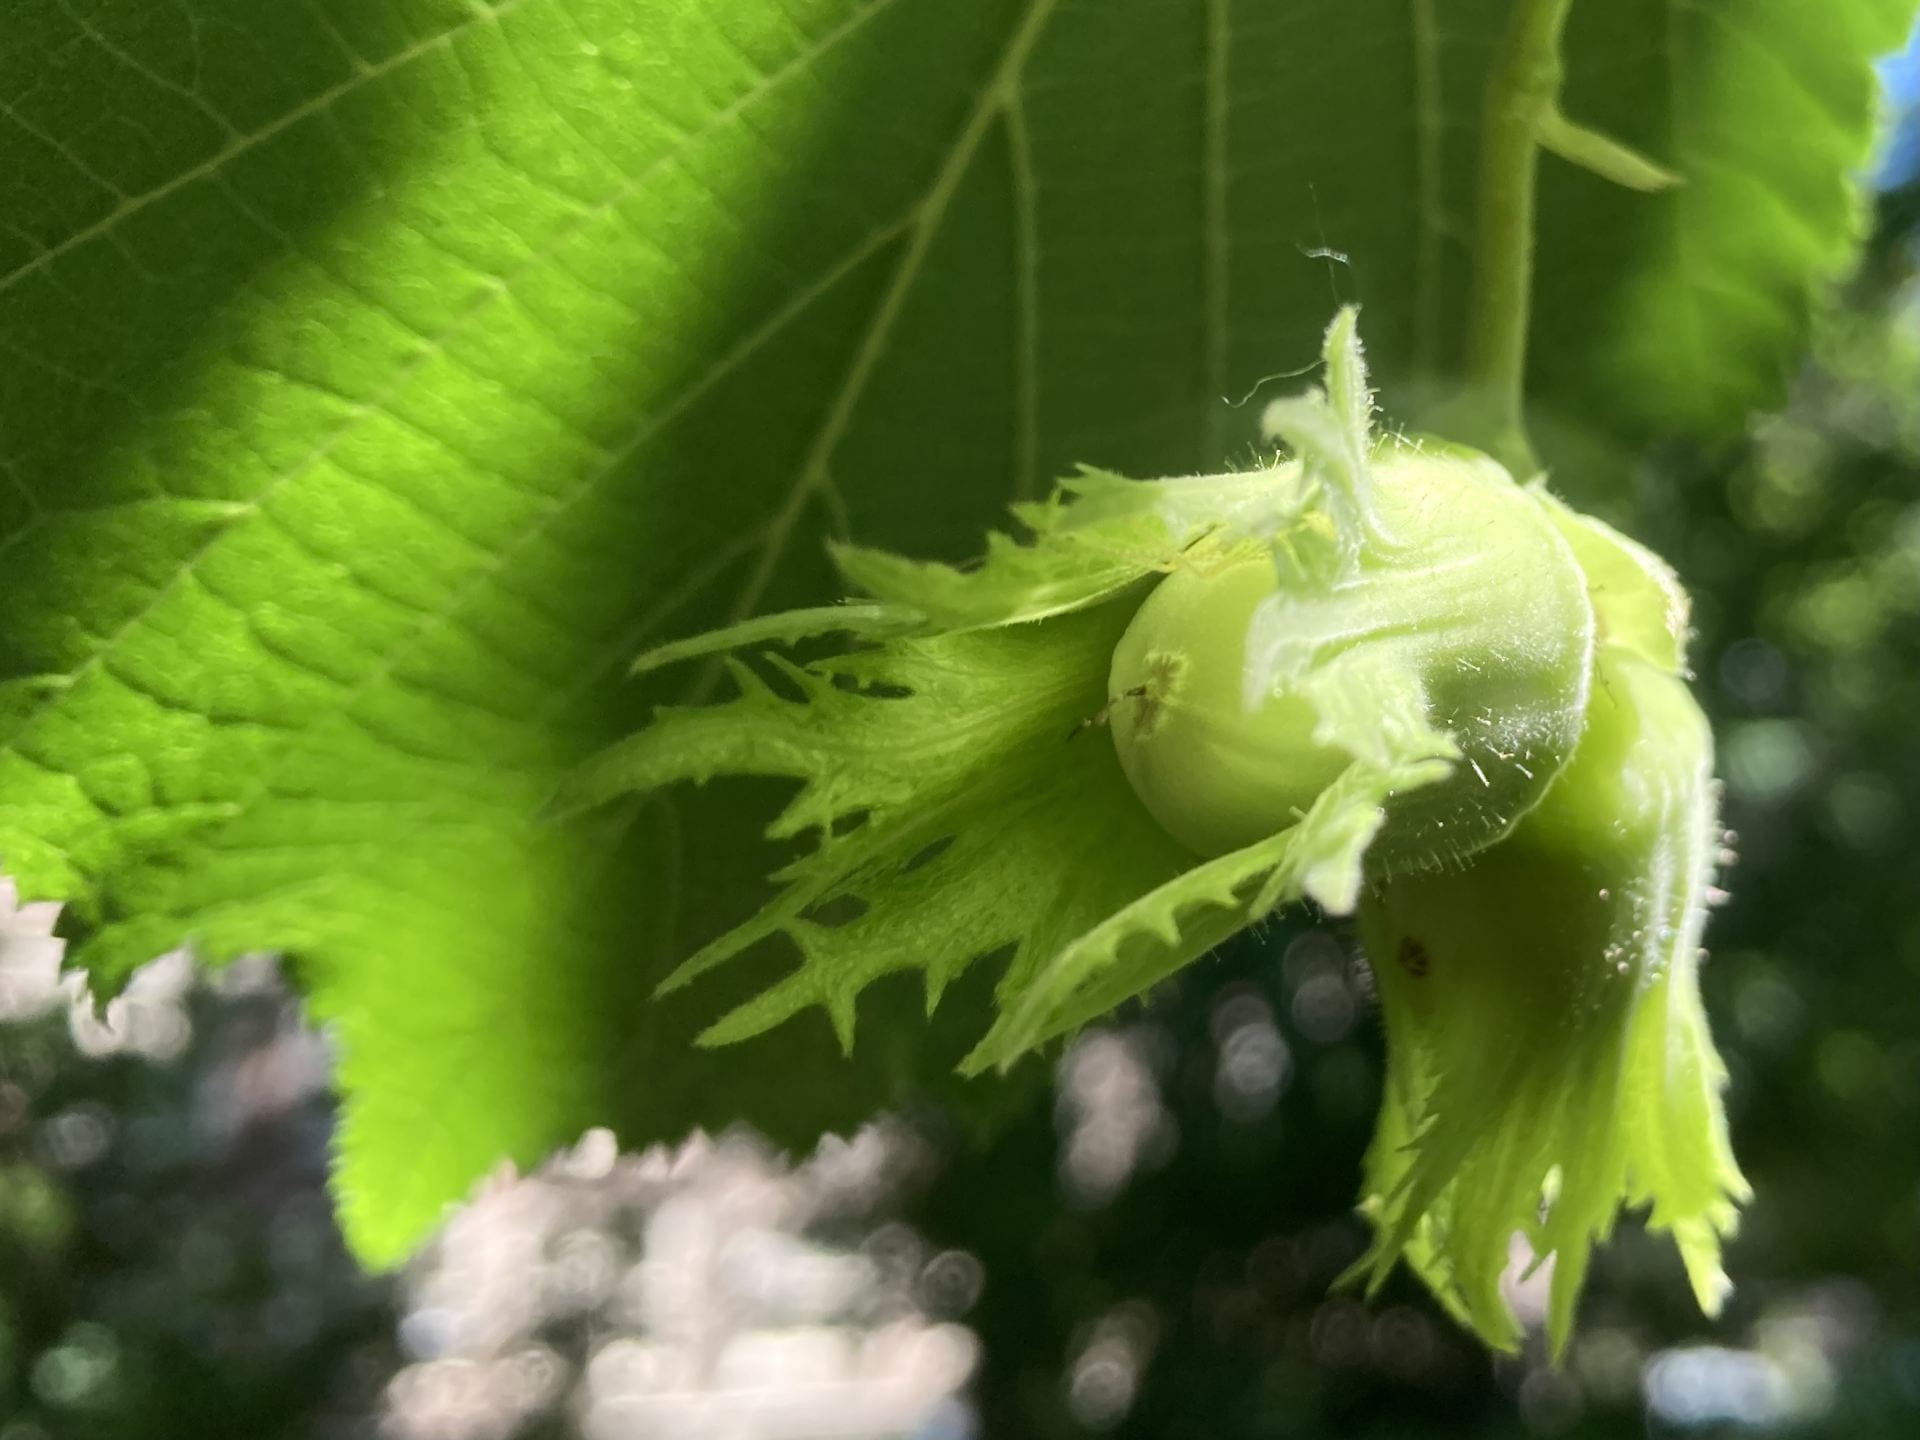 Developing hazelnuts, Corylus avellena.